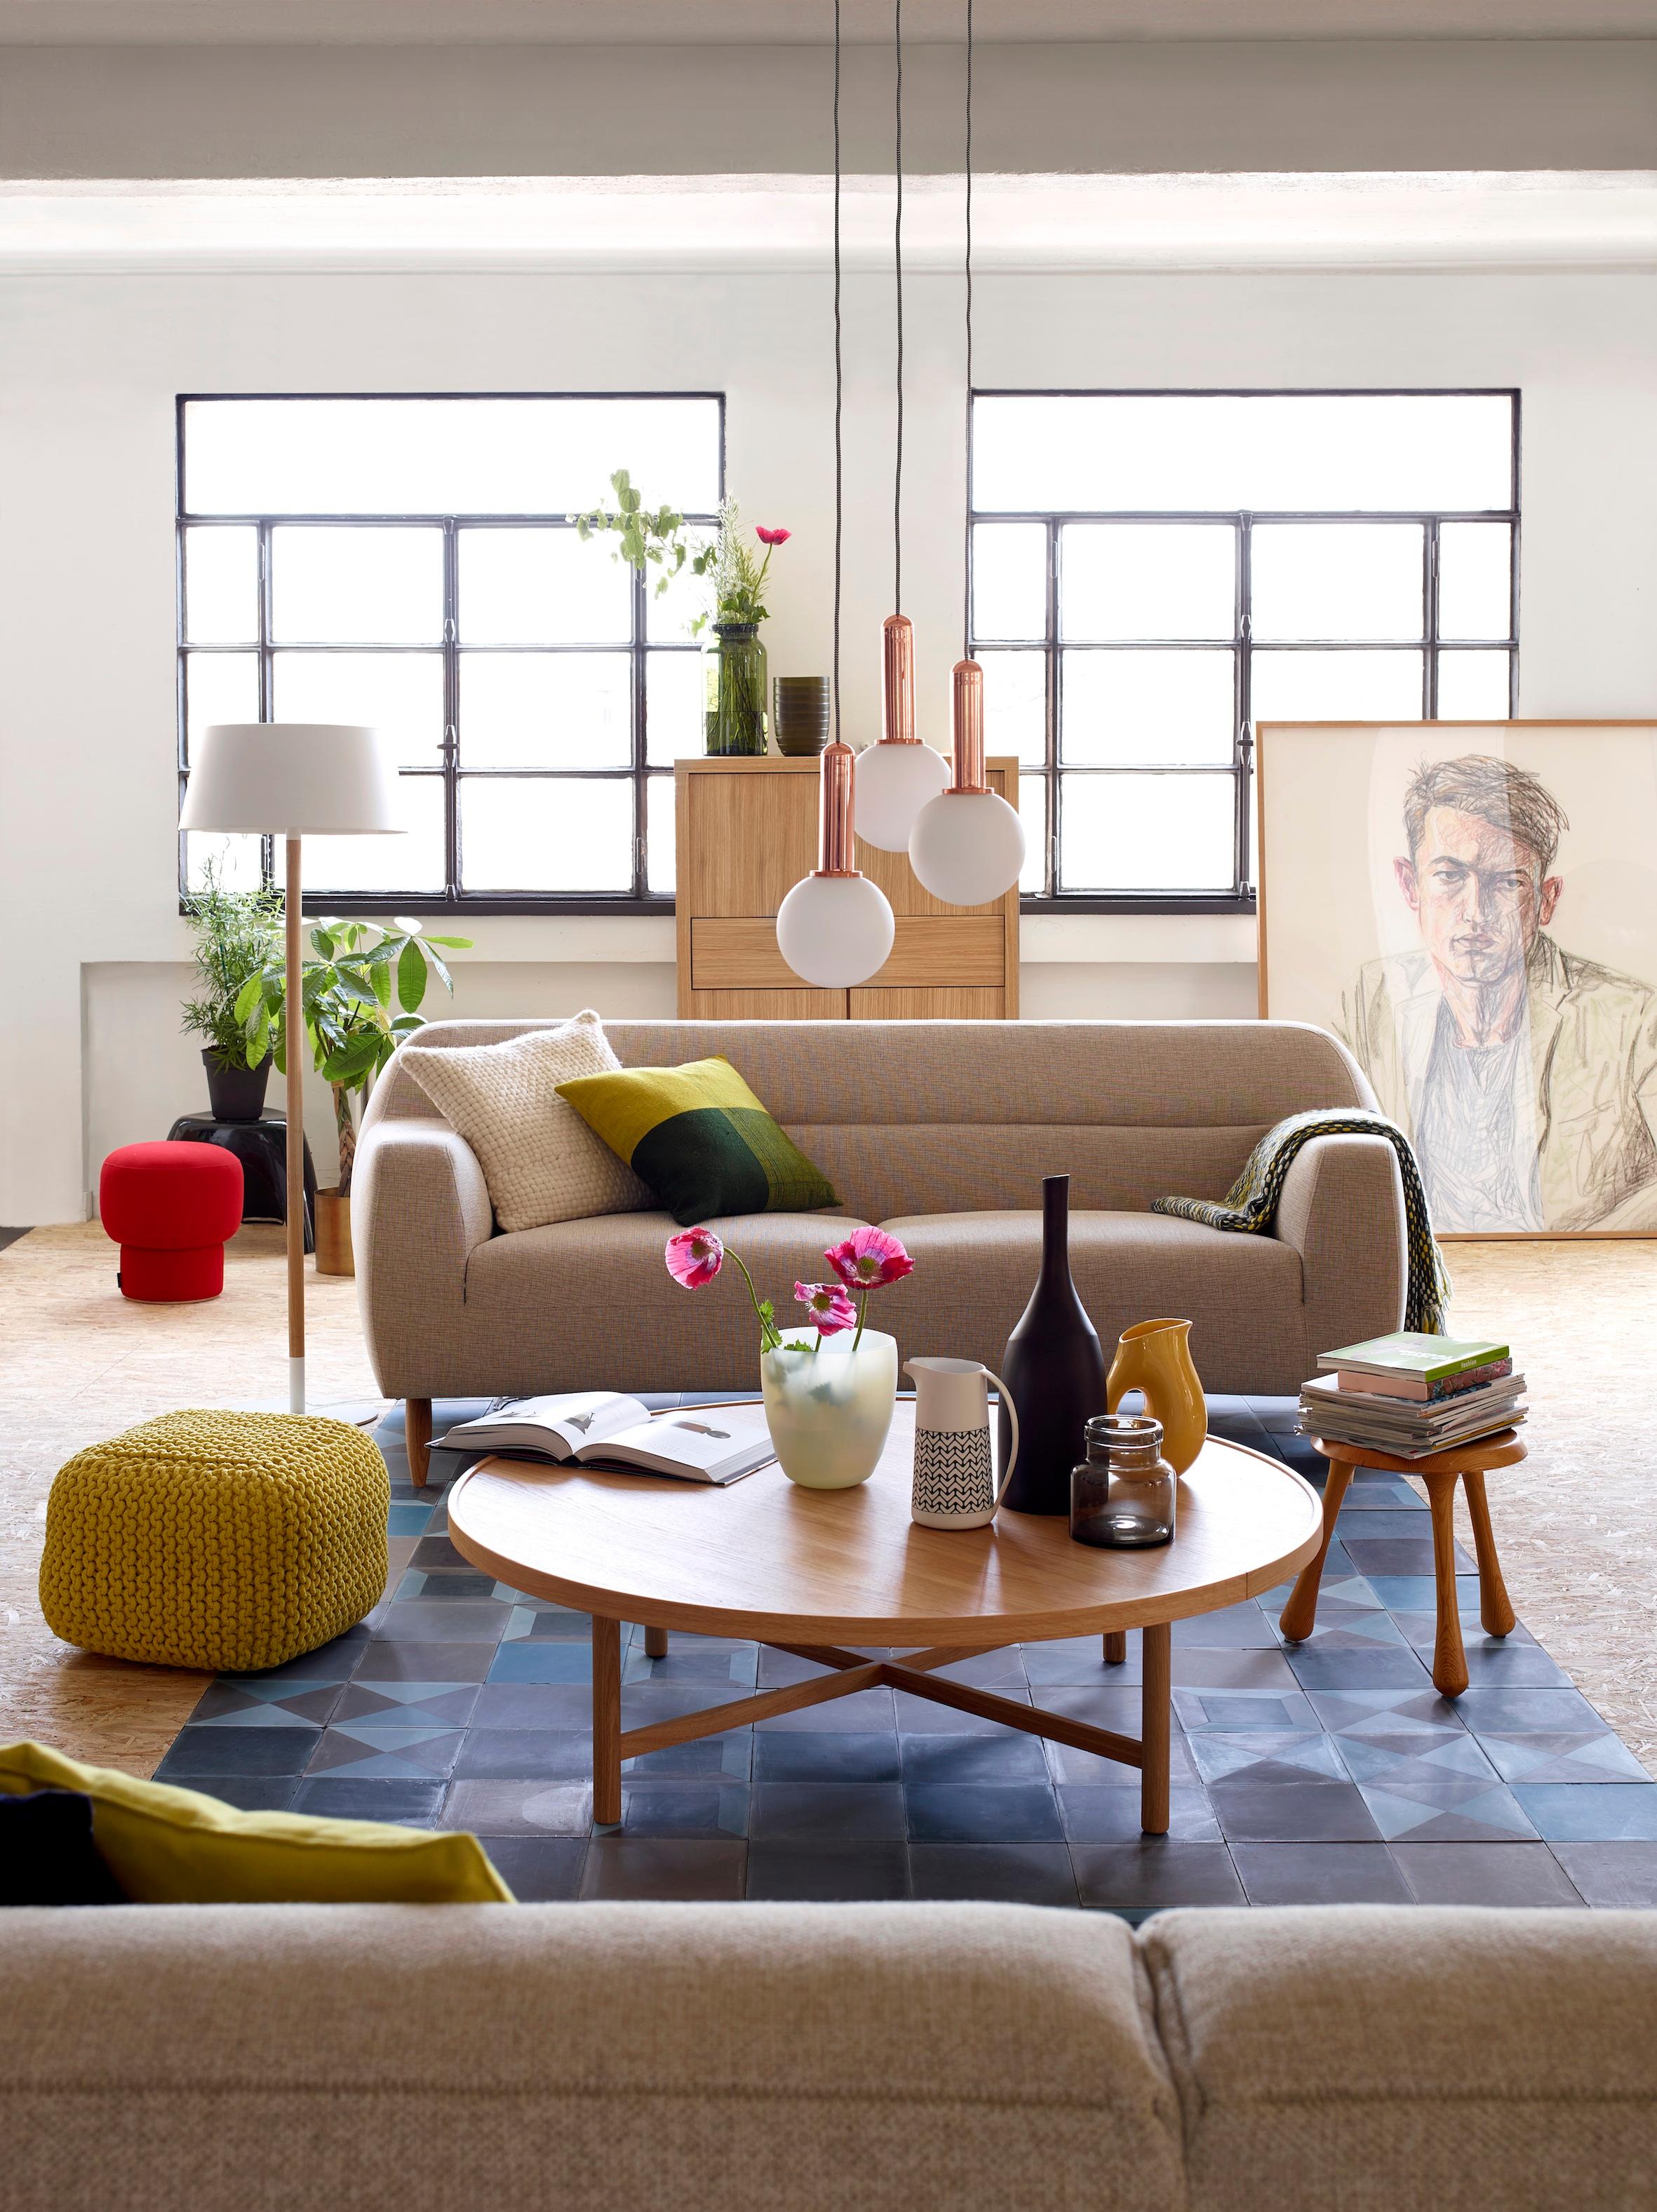 Moderne Sitzgruppe im Wohnzimmer #wohnzimmer #sofa #rundercouchtisch #zimmergestaltung ©Habitat